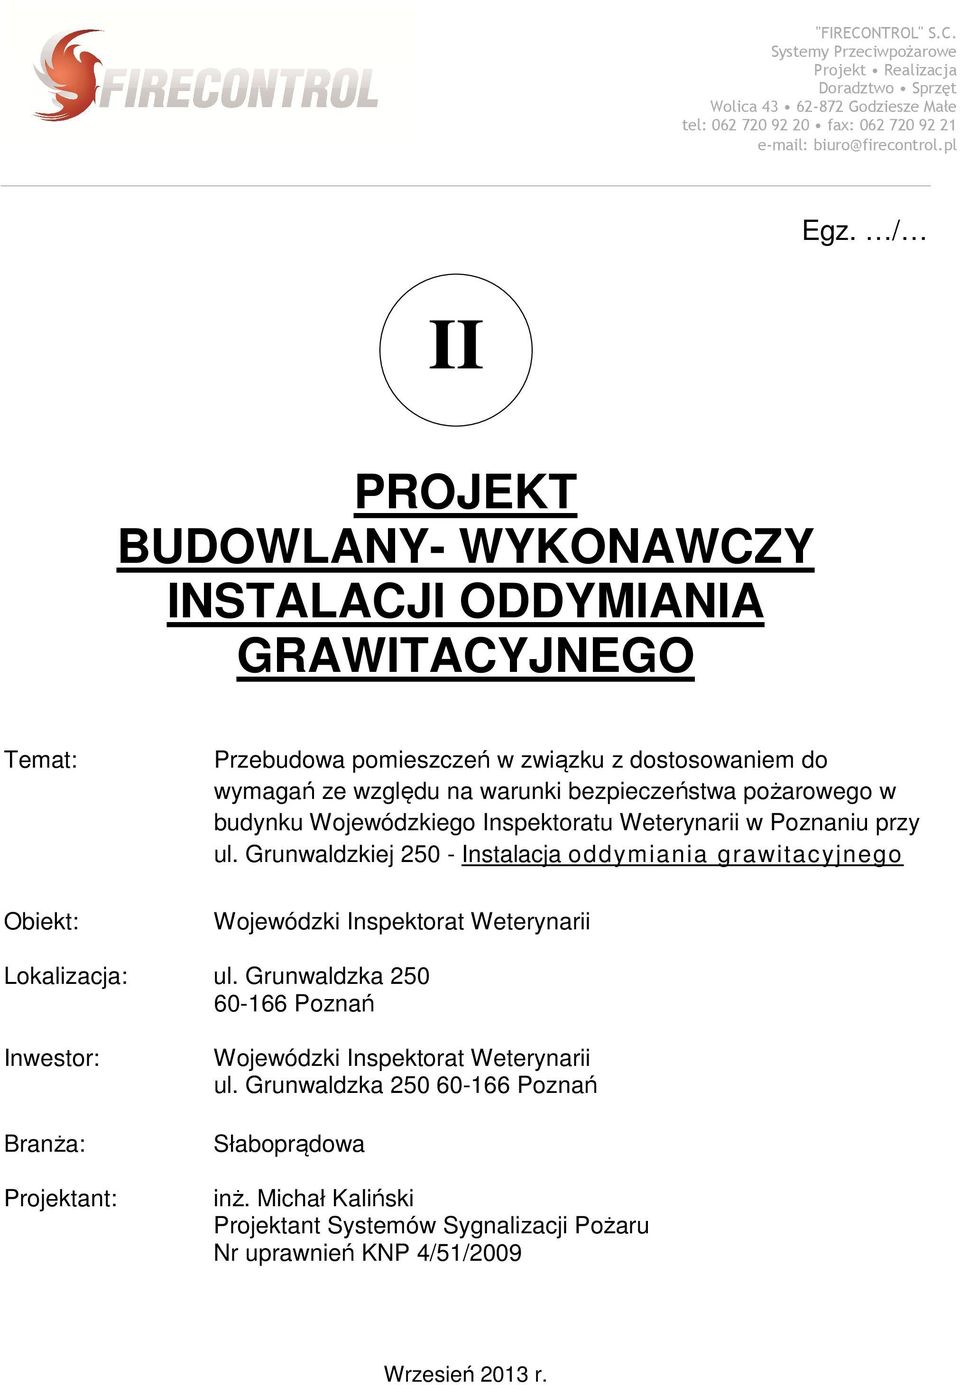 Grunwaldzkiej 250 - Instalacja oddymiania grawitacyjnego Wojewódzki Inspektorat Weterynarii Lokalizacja: ul.